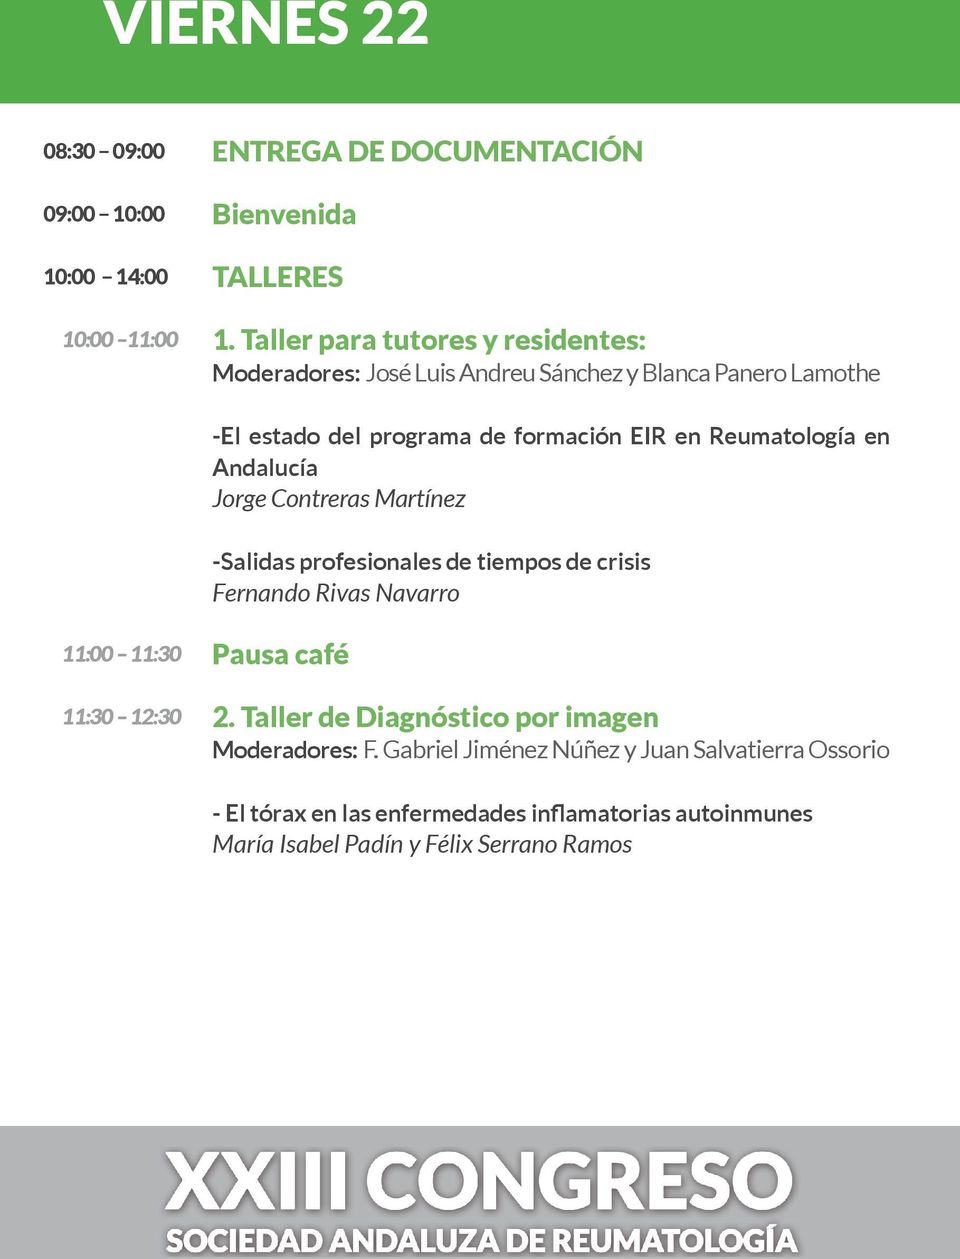 Reumatología en Andalucía Jorge Contreras Martínez -Salidas profesionales de tiempos de crisis Fernando Rivas Navarro 11:00 11:30 11:30 12:30 Pausa